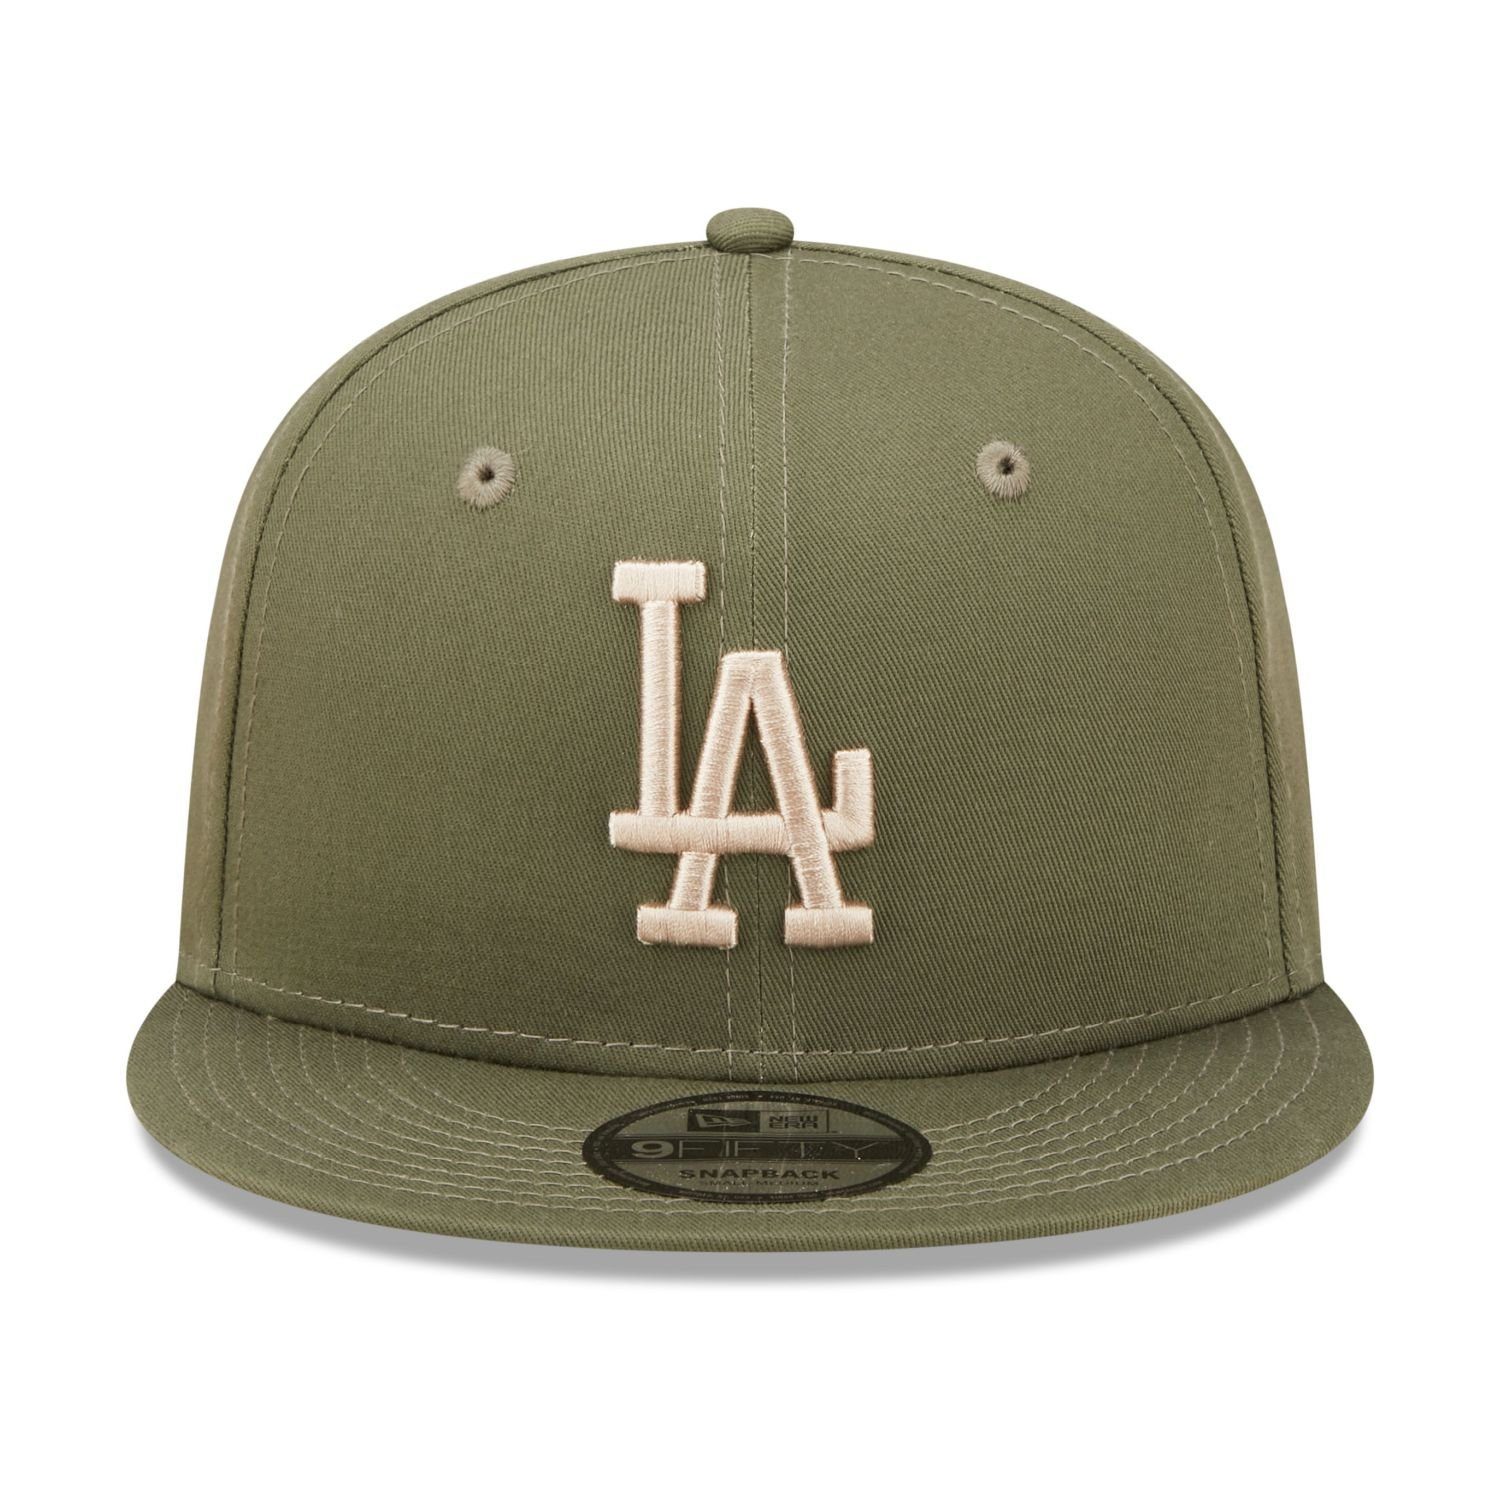 New Cap Los Angeles Dodgers Era 9Fifty Snapback